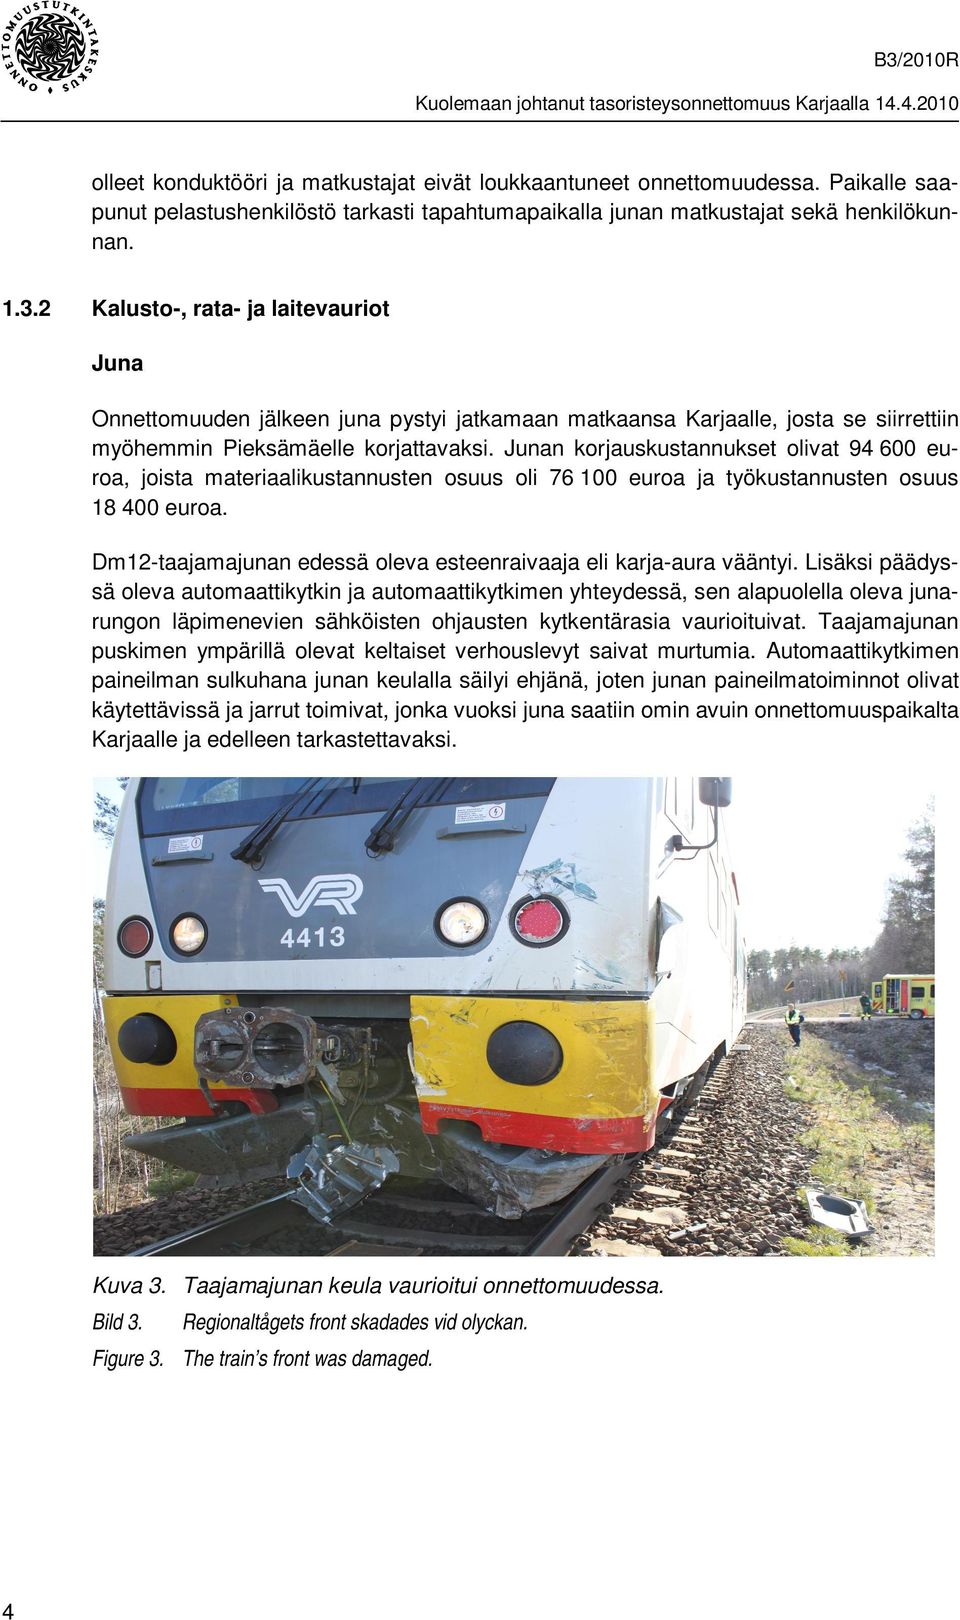 Junan korjauskustannukset olivat 94 600 euroa, joista materiaalikustannusten osuus oli 76 100 euroa ja työkustannusten osuus 18 400 euroa.